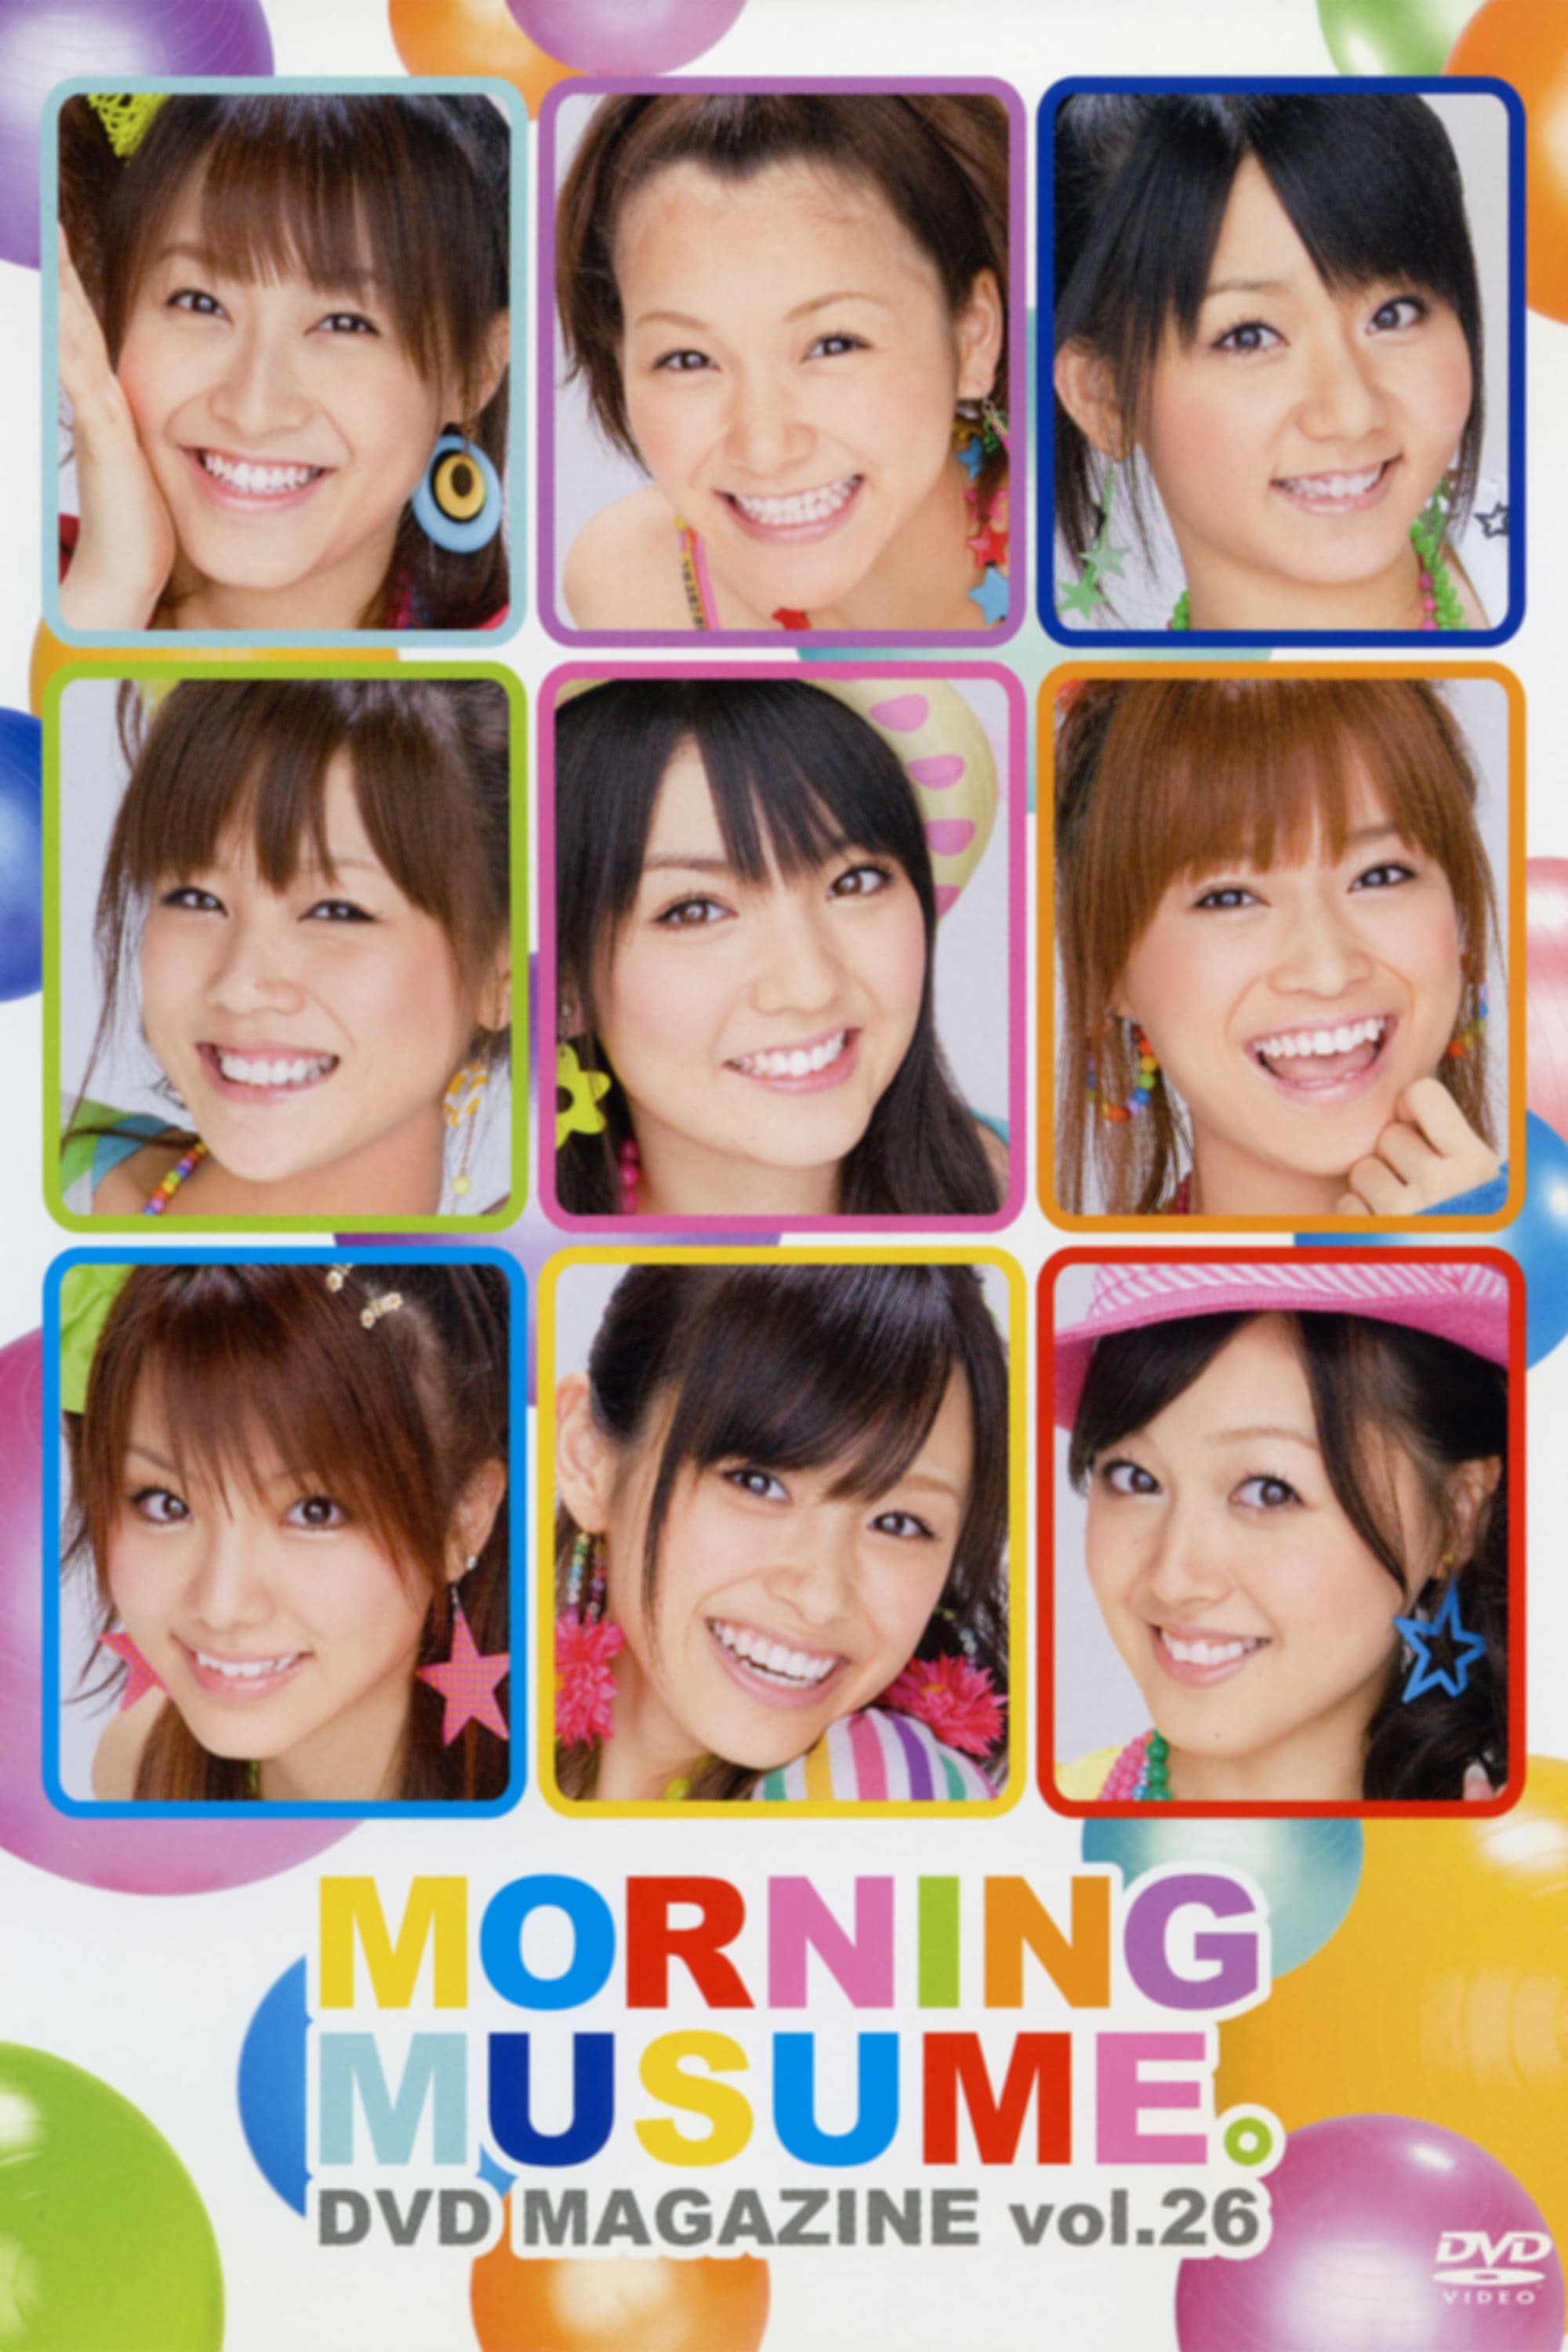 Morning Musume. DVD Magazine Vol.26